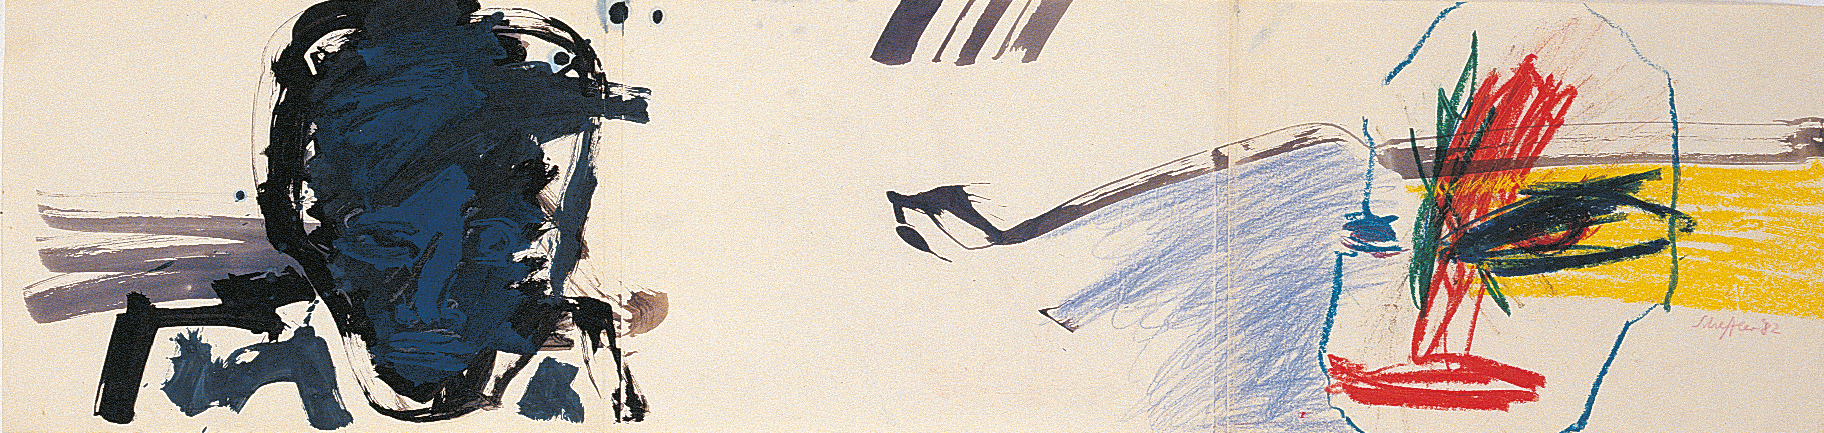 Wolfram A. Scheffler: Zeichnung (2), 1982, Gouache auf Papier, 42 x 118 cm